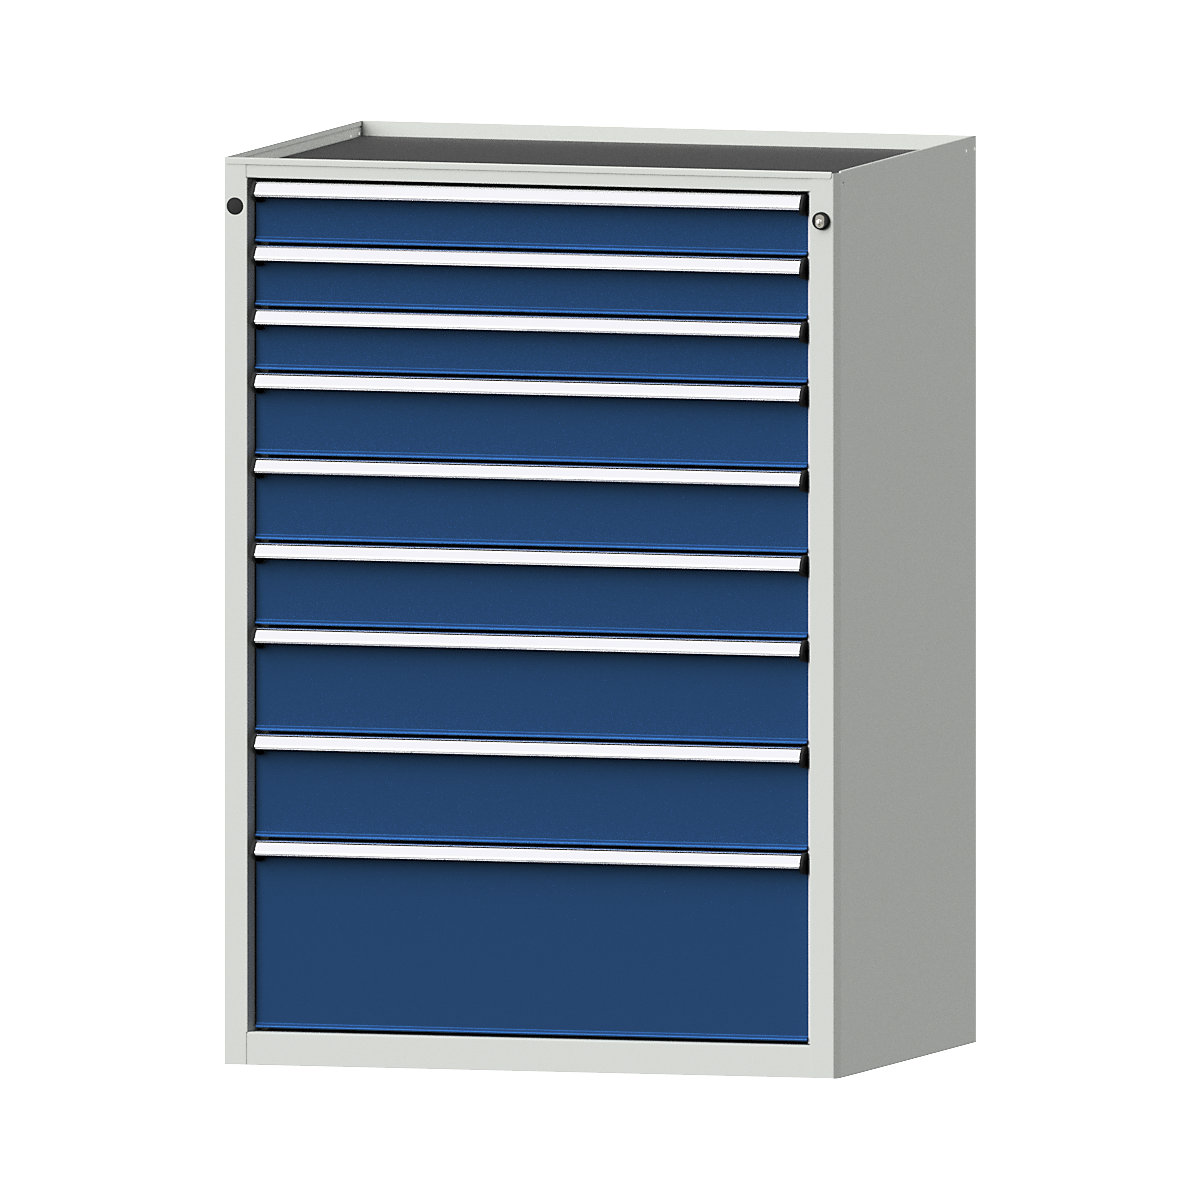 Zásuvková skříň – ANKE, š x h 910 x 675 mm, nosnost zásuvky 200 kg, 9 zásuvek, výška 1280 mm, čelo hořcově modré